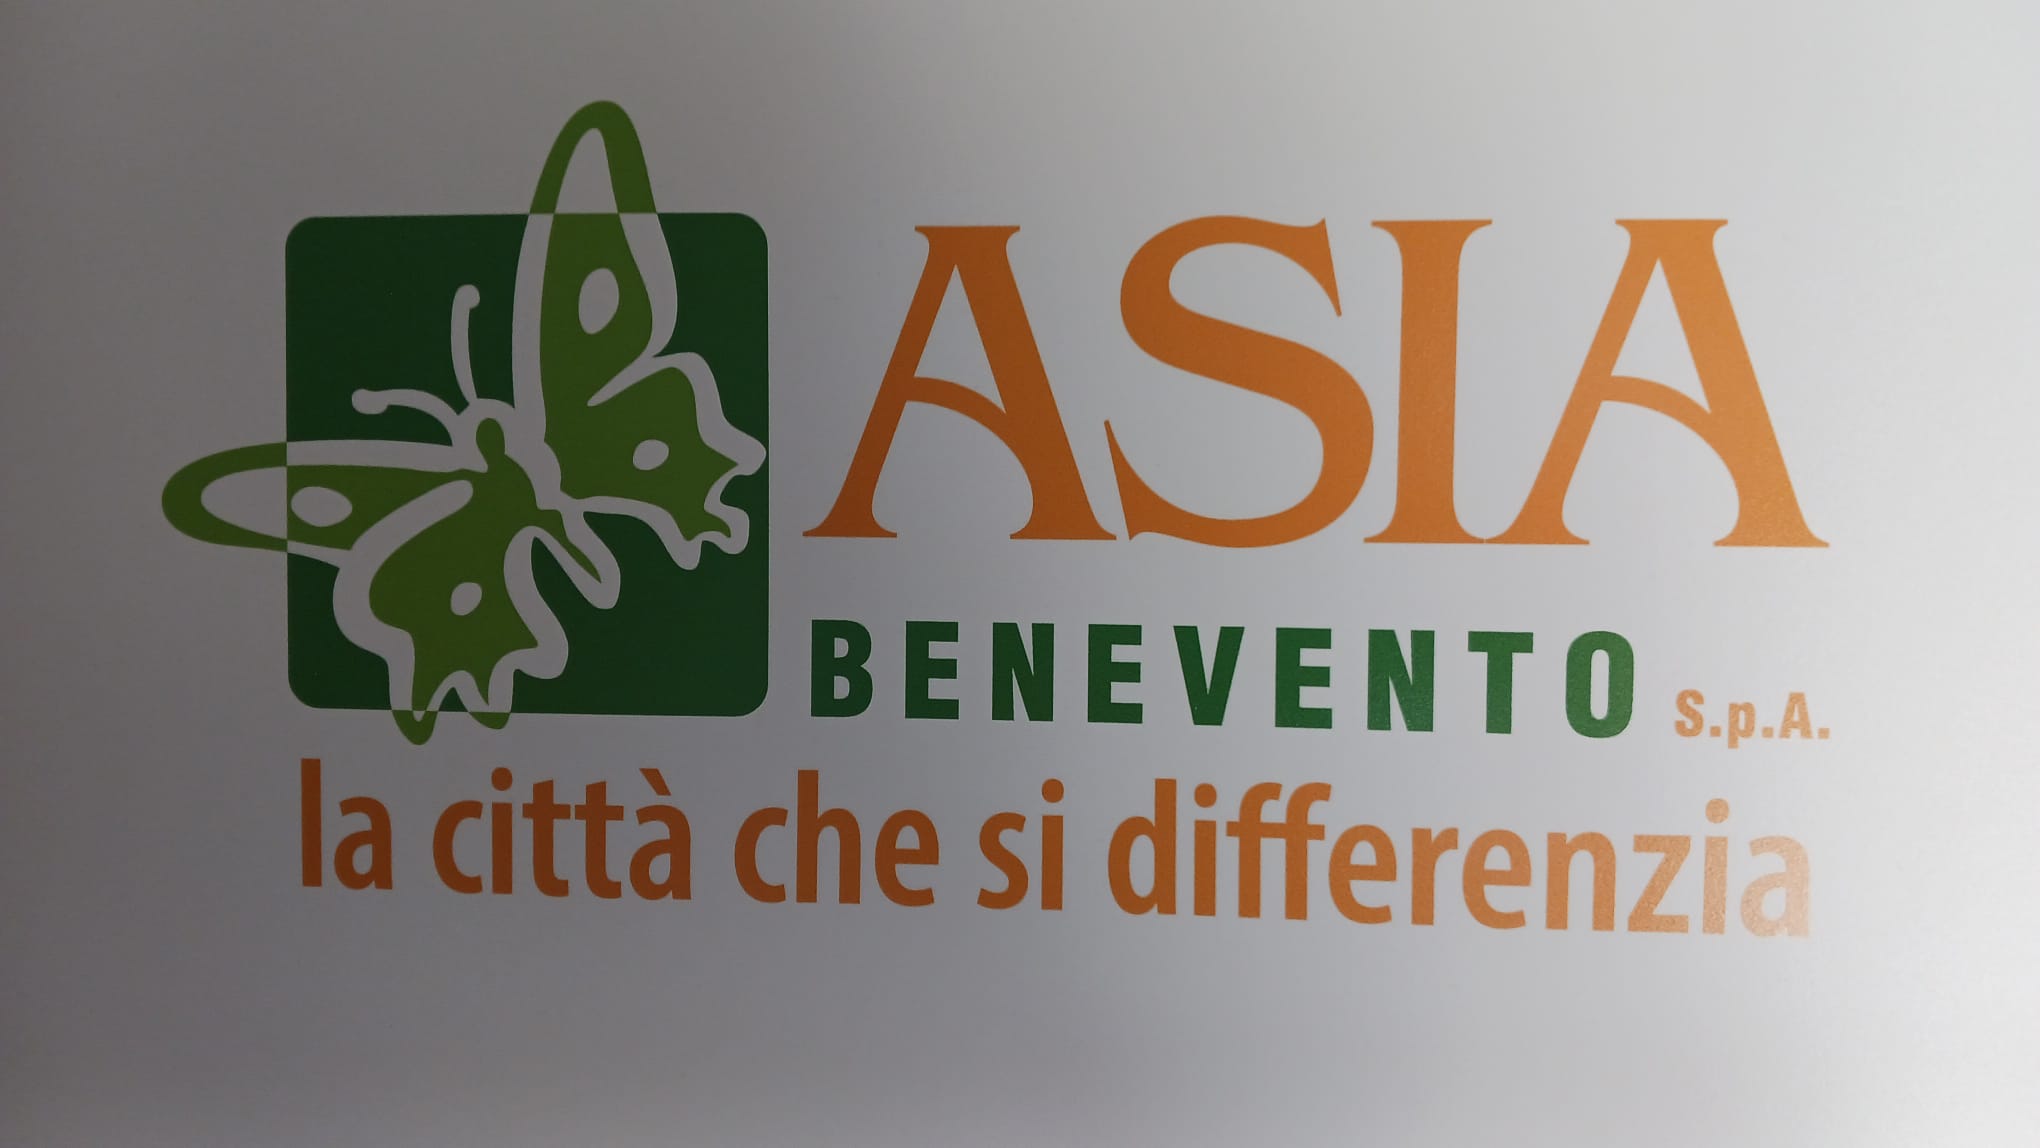 Asia Benevento partecipa alla Settimana Europea per la Riduzione dei Rifiuti